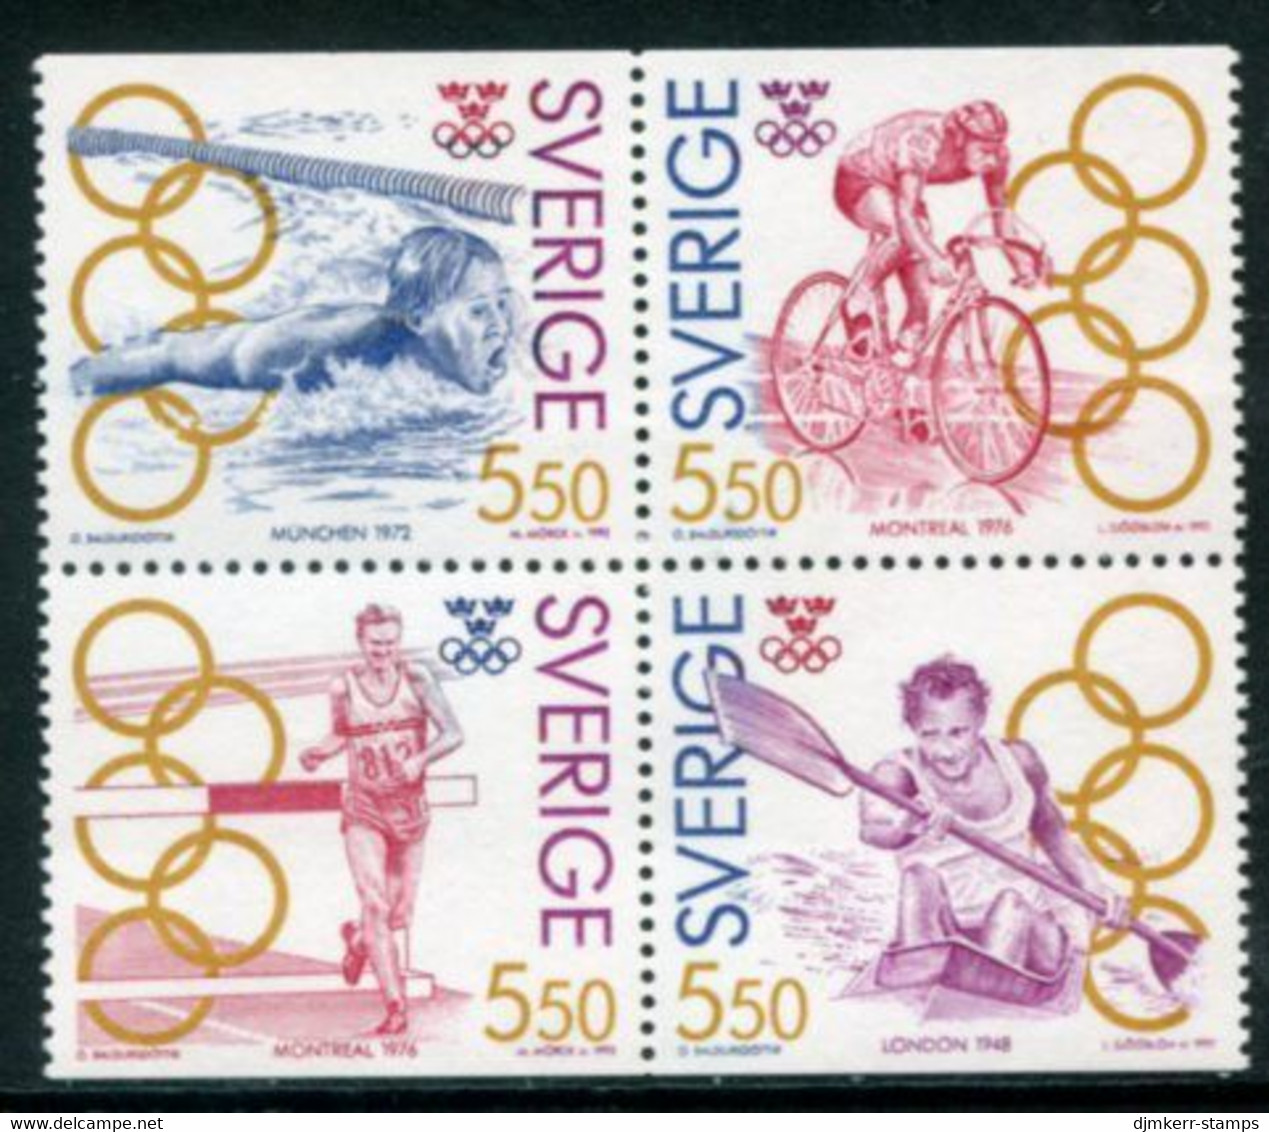 SWEDEN 1992 Olympic Medal Winners III MNH / **   Michel 1721-24 - Neufs